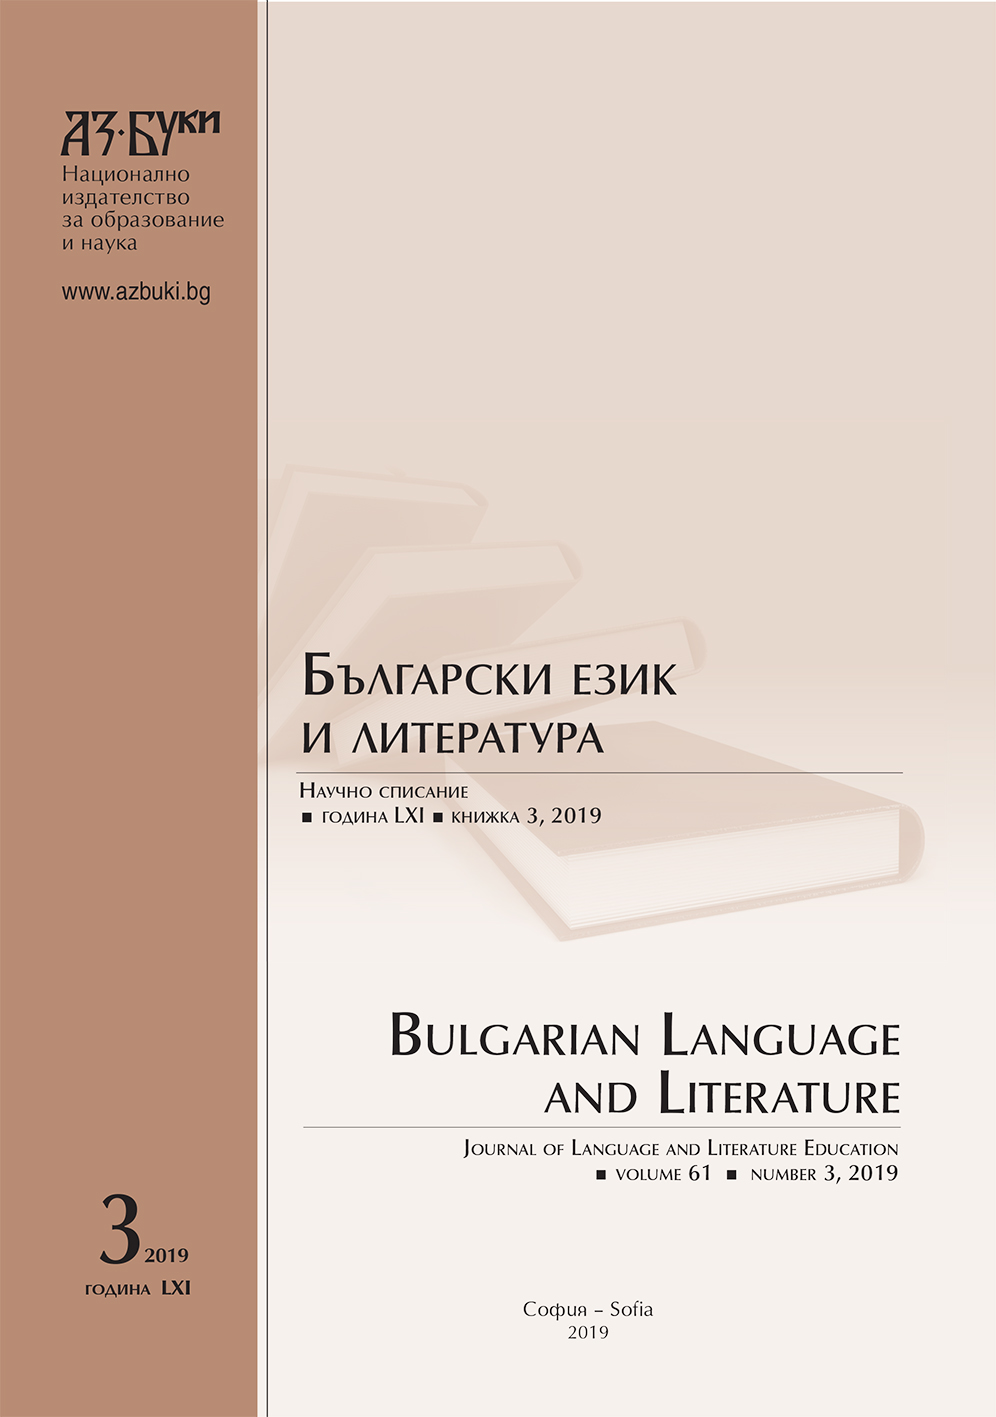 Към въпроса за видовете сказуеми в съвременния български език